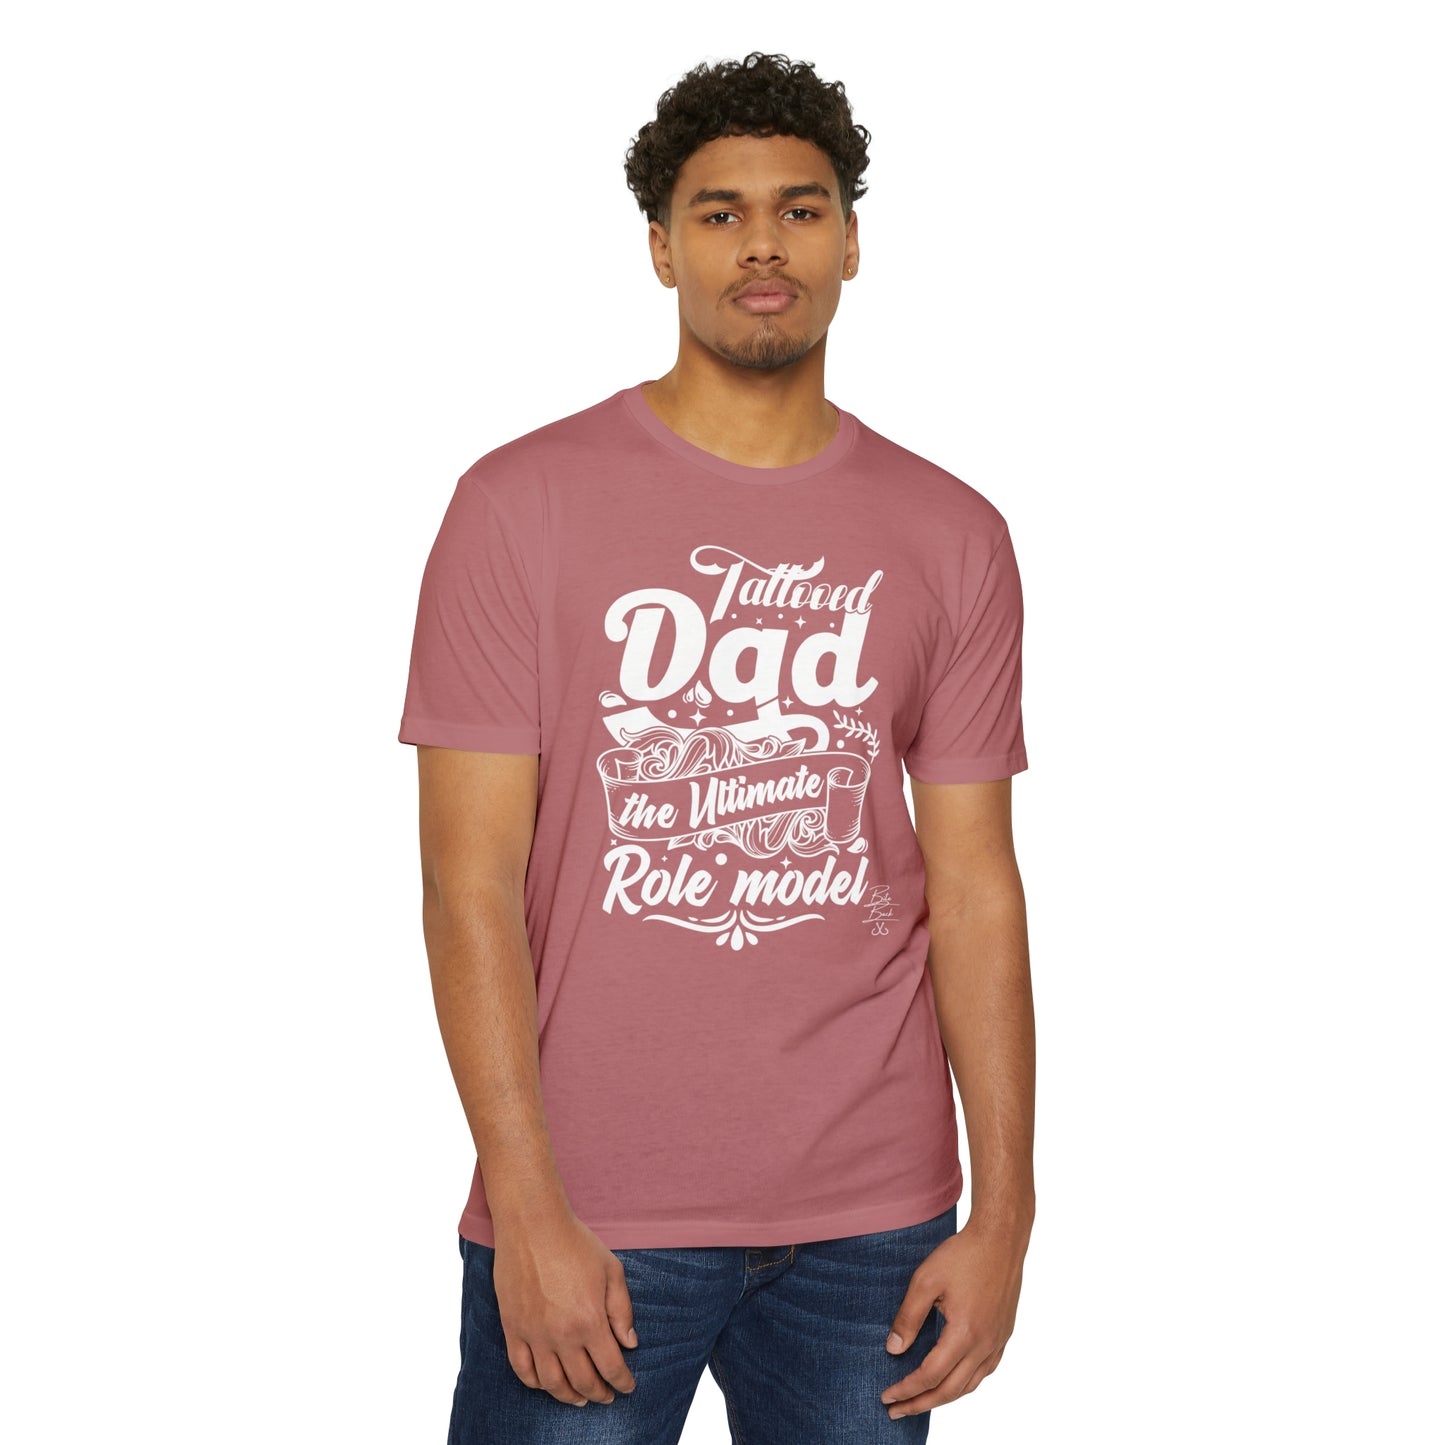 Tattooed Dad T-shirt